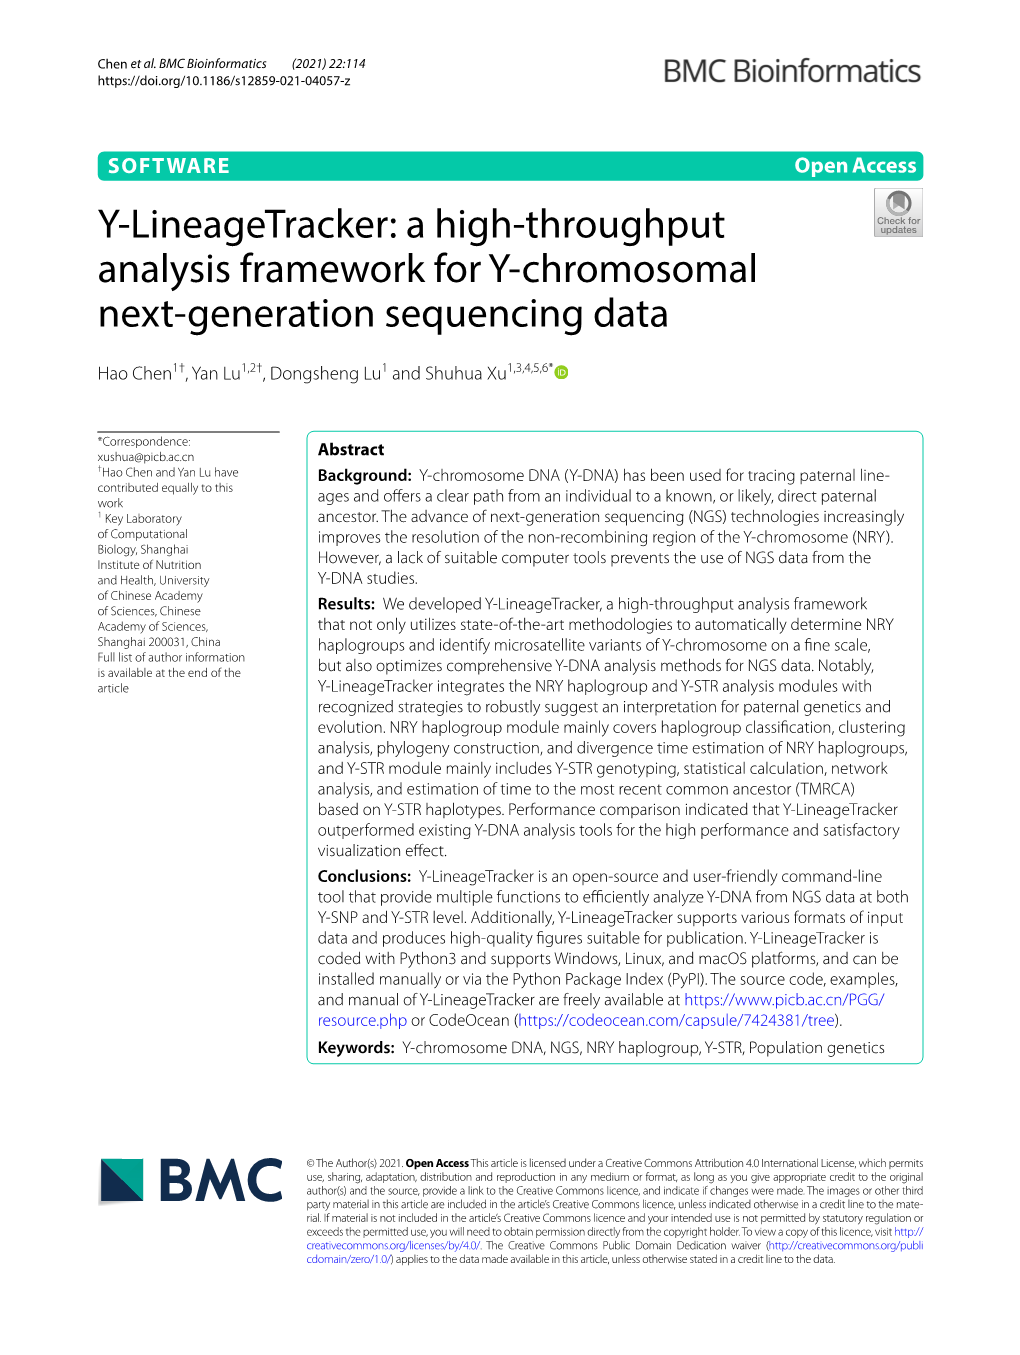 Y-Lineagetracker: a High-Throughput Analysis Framework for Y